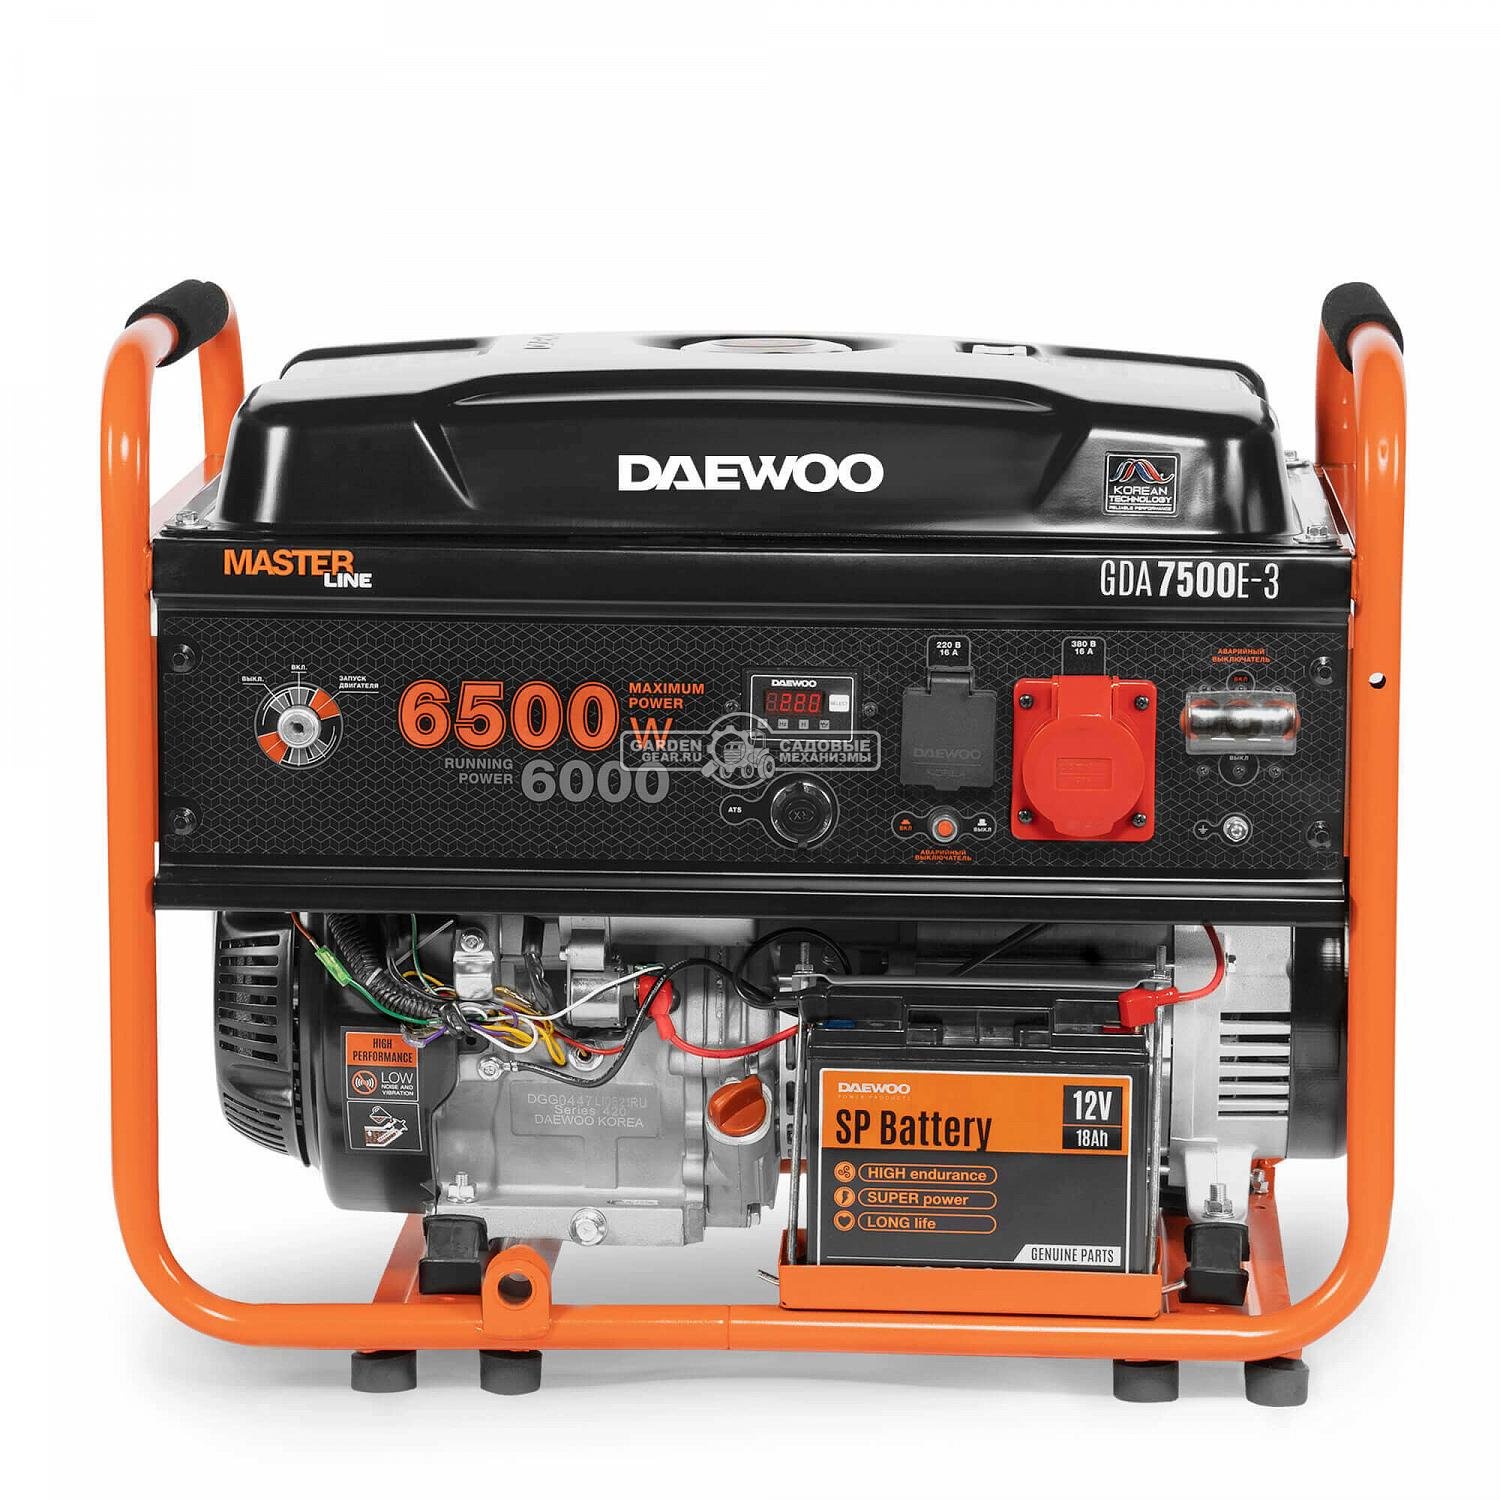 Бензиновый генератор Daewoo GDA 7500E-3 трехфазный (PRC, 420 см3, 6,0/6,5 кВт, электростартер, разъем ATS, 30 л, 81,7 кг.)